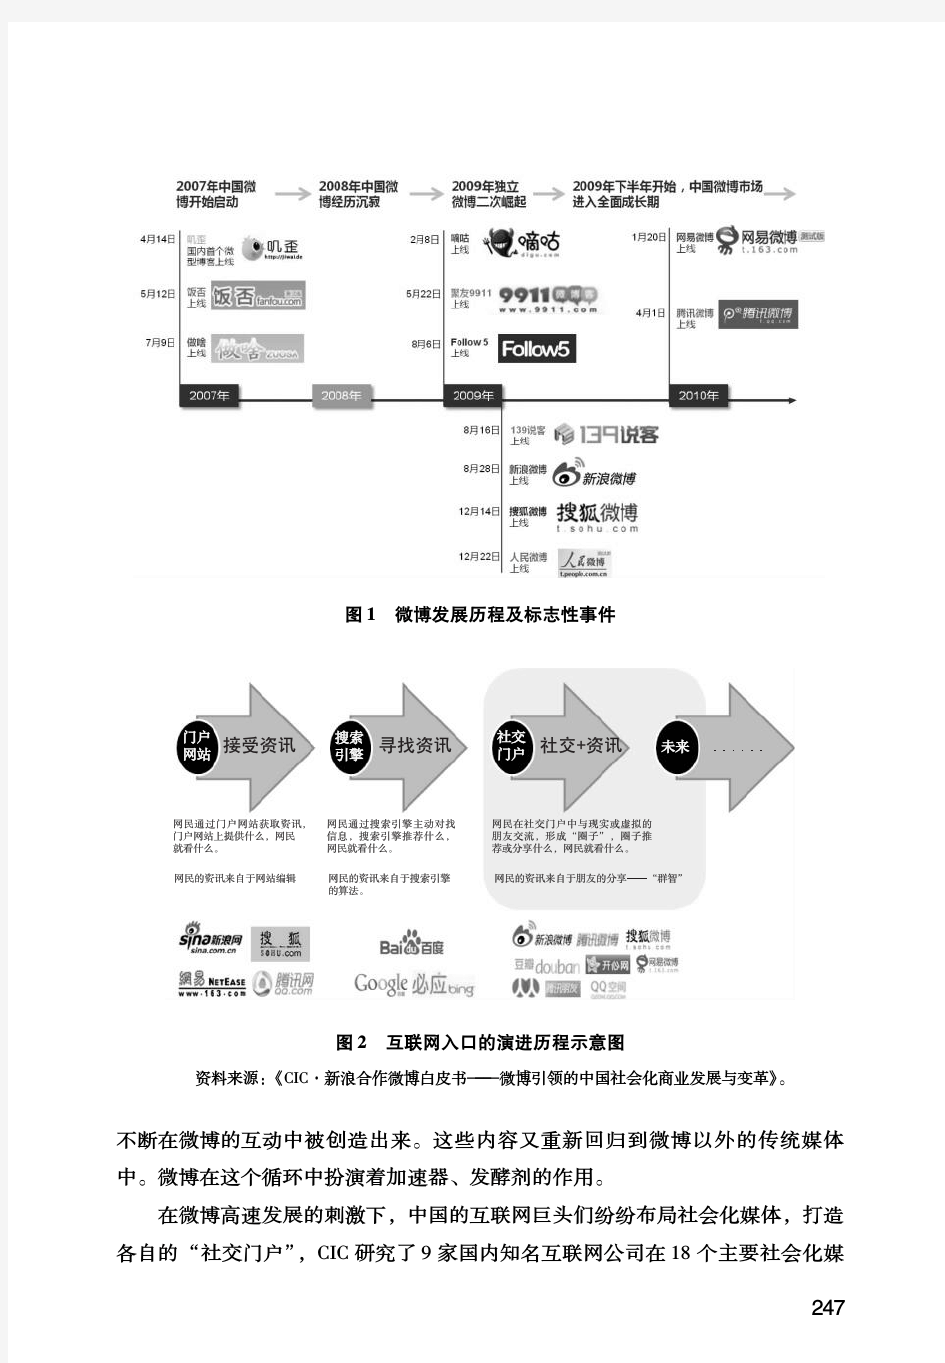 2011年中国微博行业发展概述